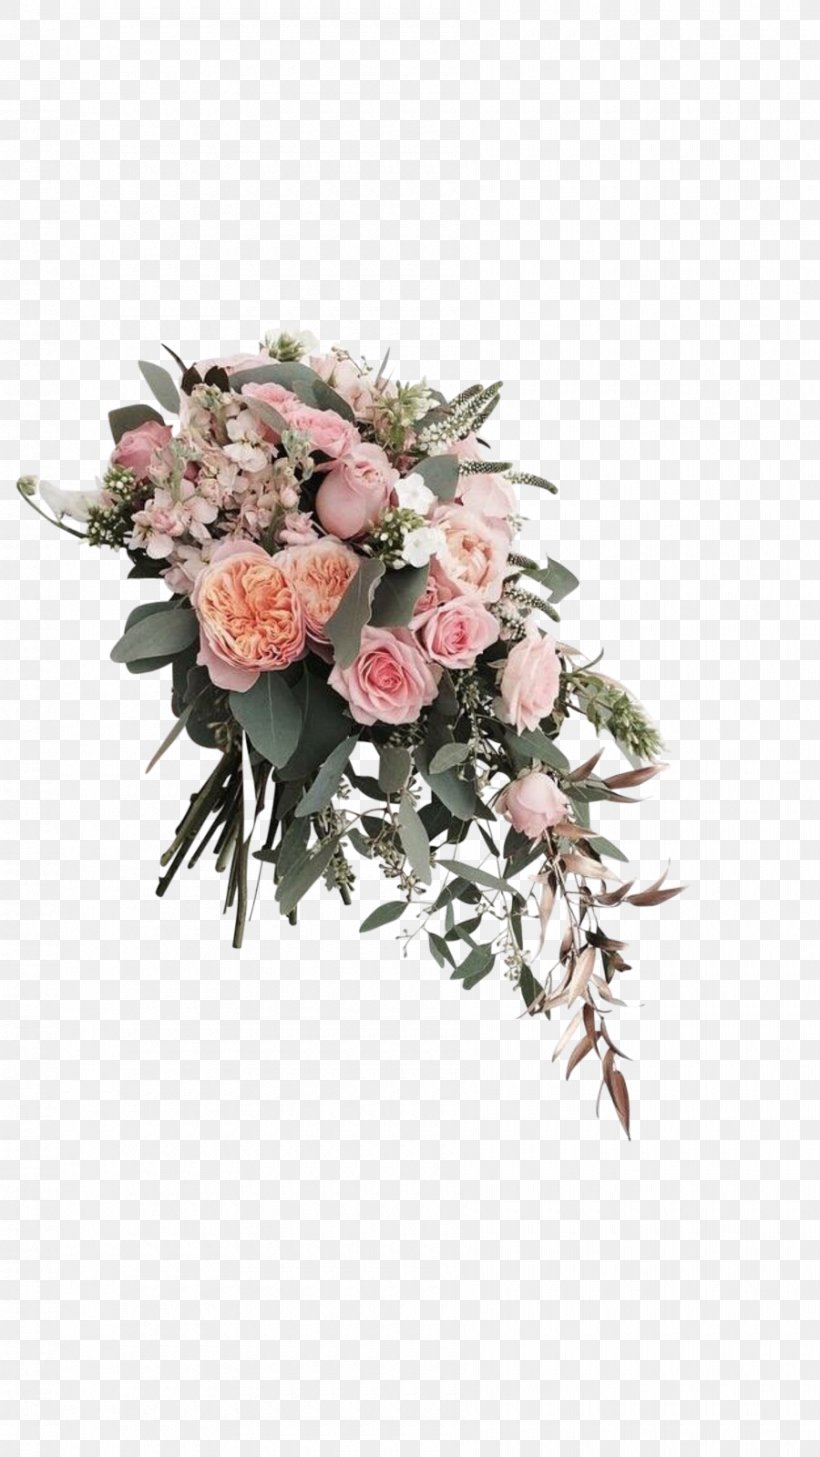 Flower Bouquet Cut Flowers Floral Design Floristry, PNG, 900x1600px, Flower Bouquet, Artificial Flower, Bride, Corsage, Cut Flowers Download Free